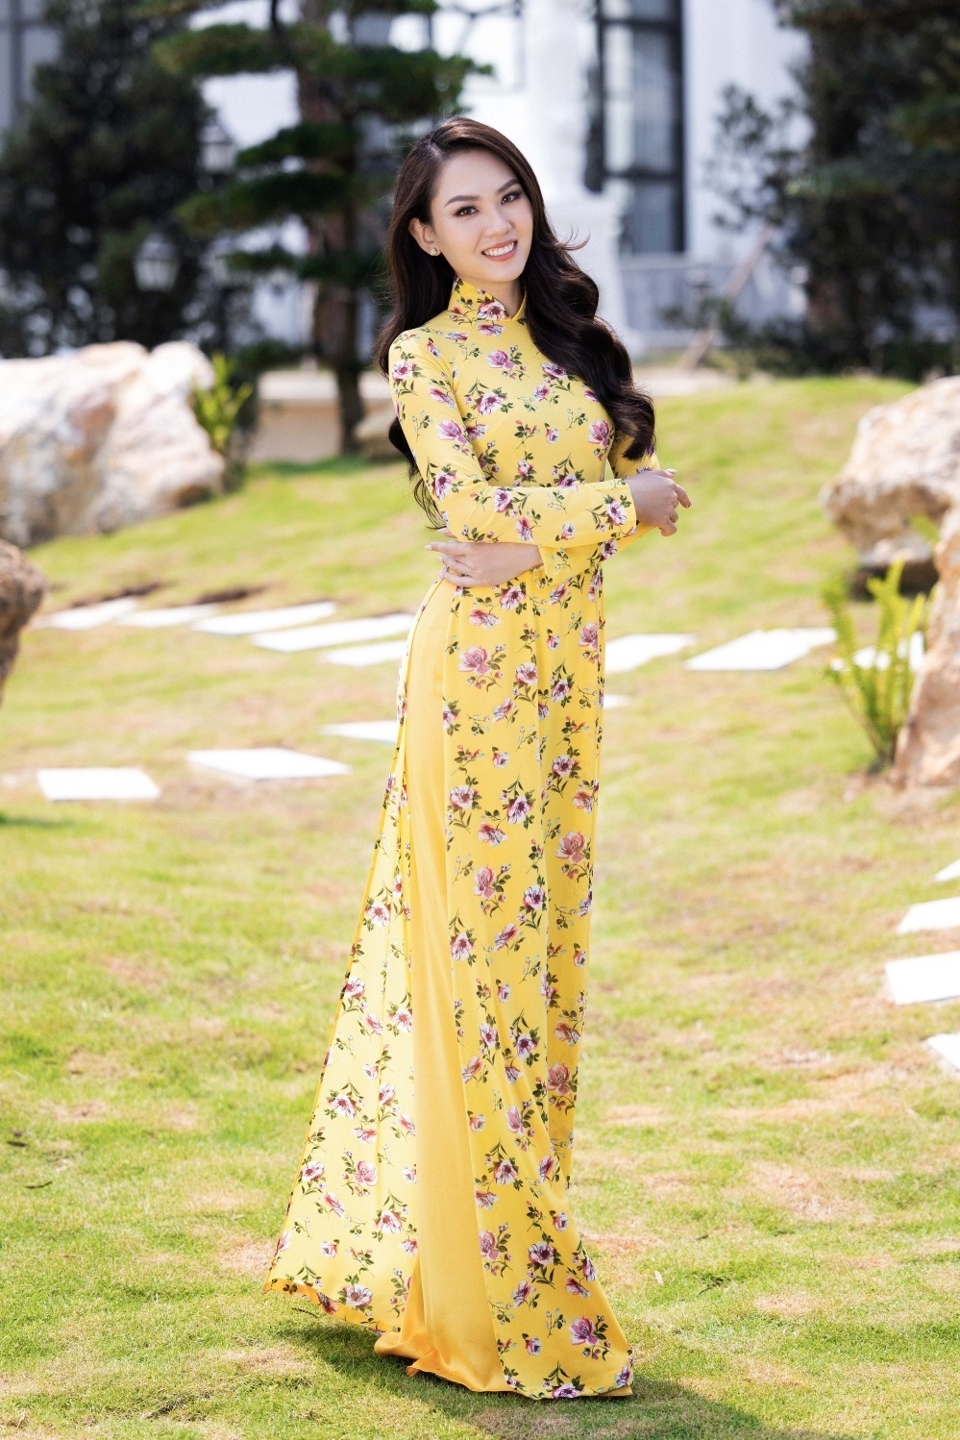 Ứng cử viên sáng giá cho ngôi vị Miss World Vietnam 2022 - Ảnh 2